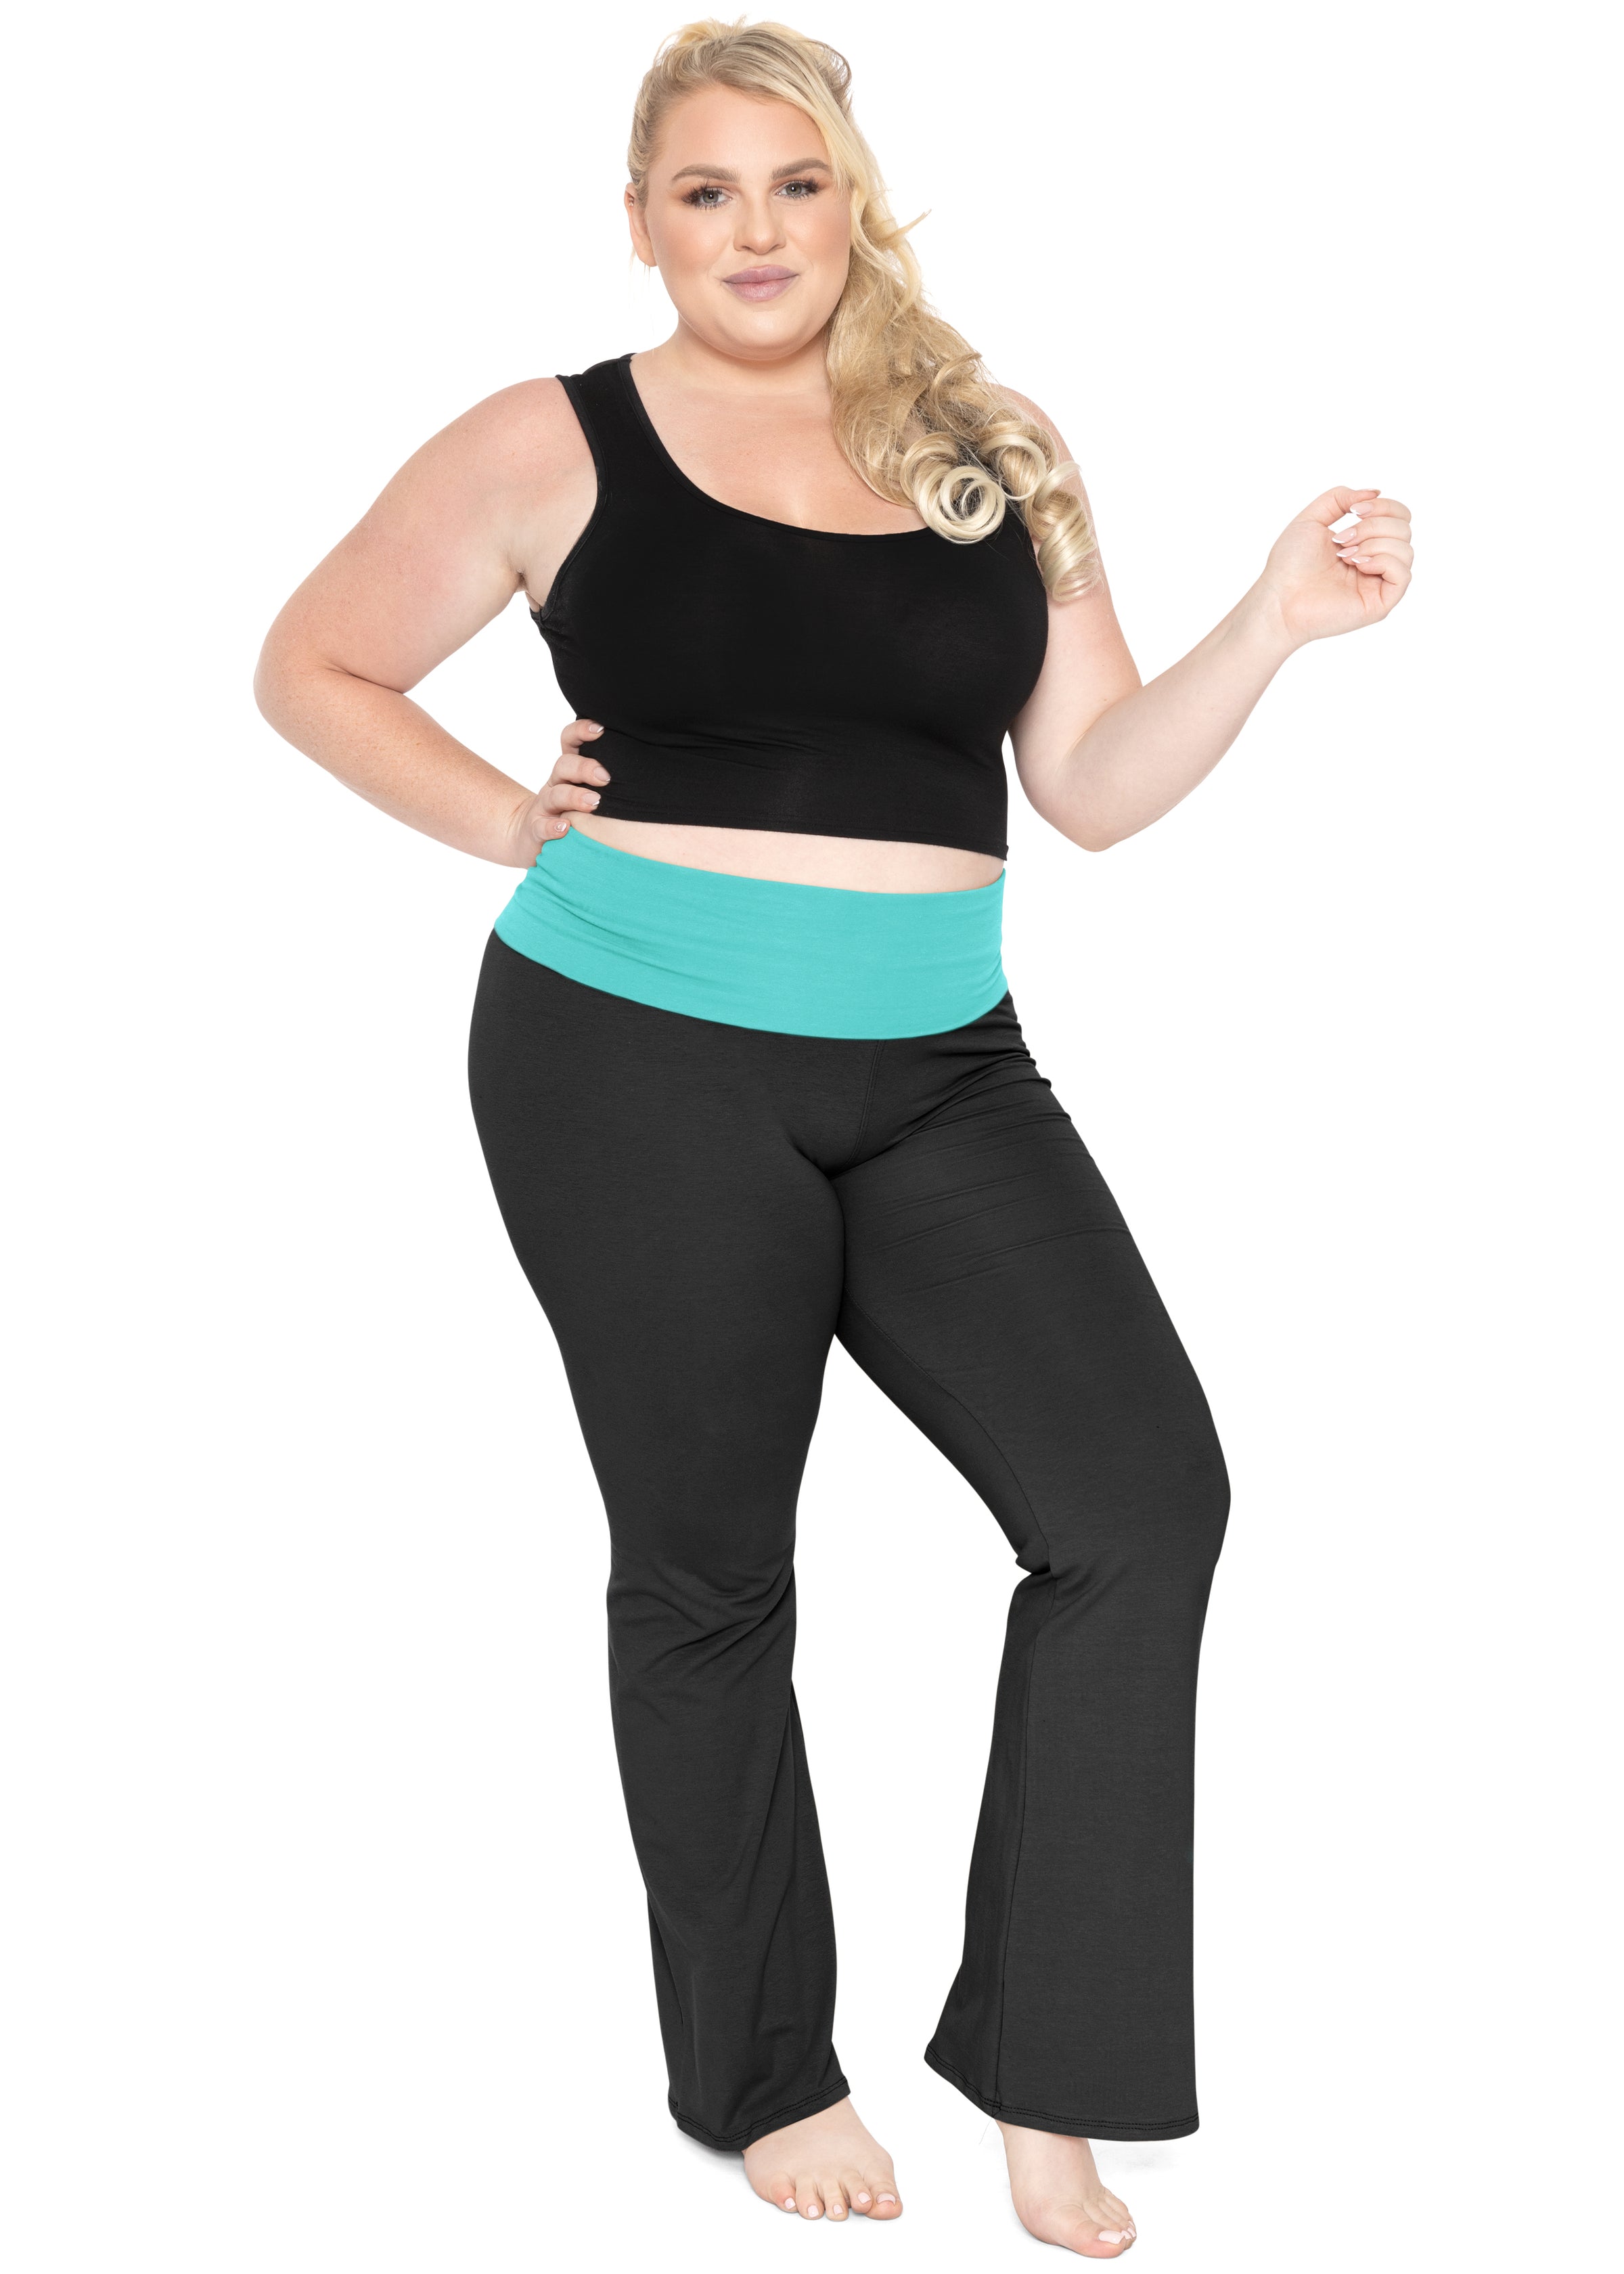 NKOOGH Workout Pants Plus Size Petite Yoga Pants for Women 3X